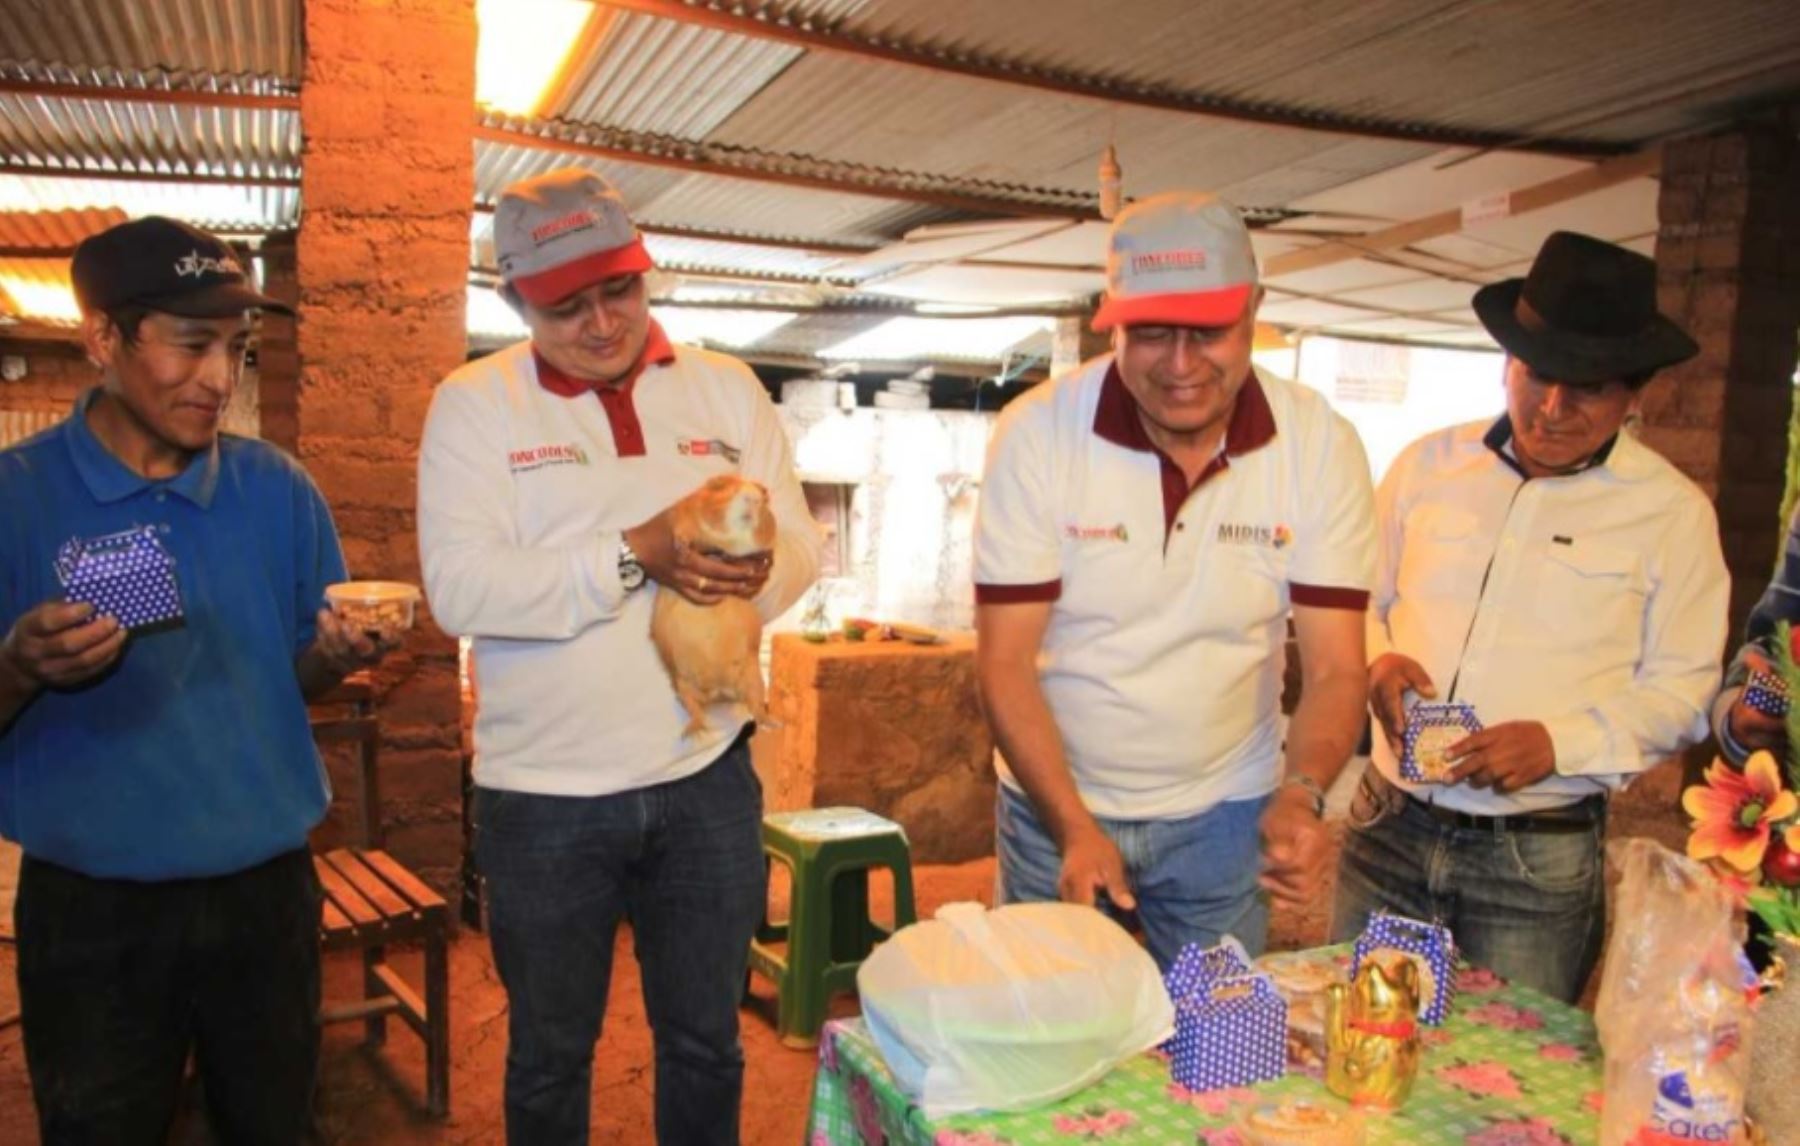 familias del distrito de San Andrés de Tupicocha, provincia de Huarochirí, región Lima, trabajan con tecnologías productivas y desarrollan emprendimientos rurales inclusivos con el proyecto Haku Wiñay